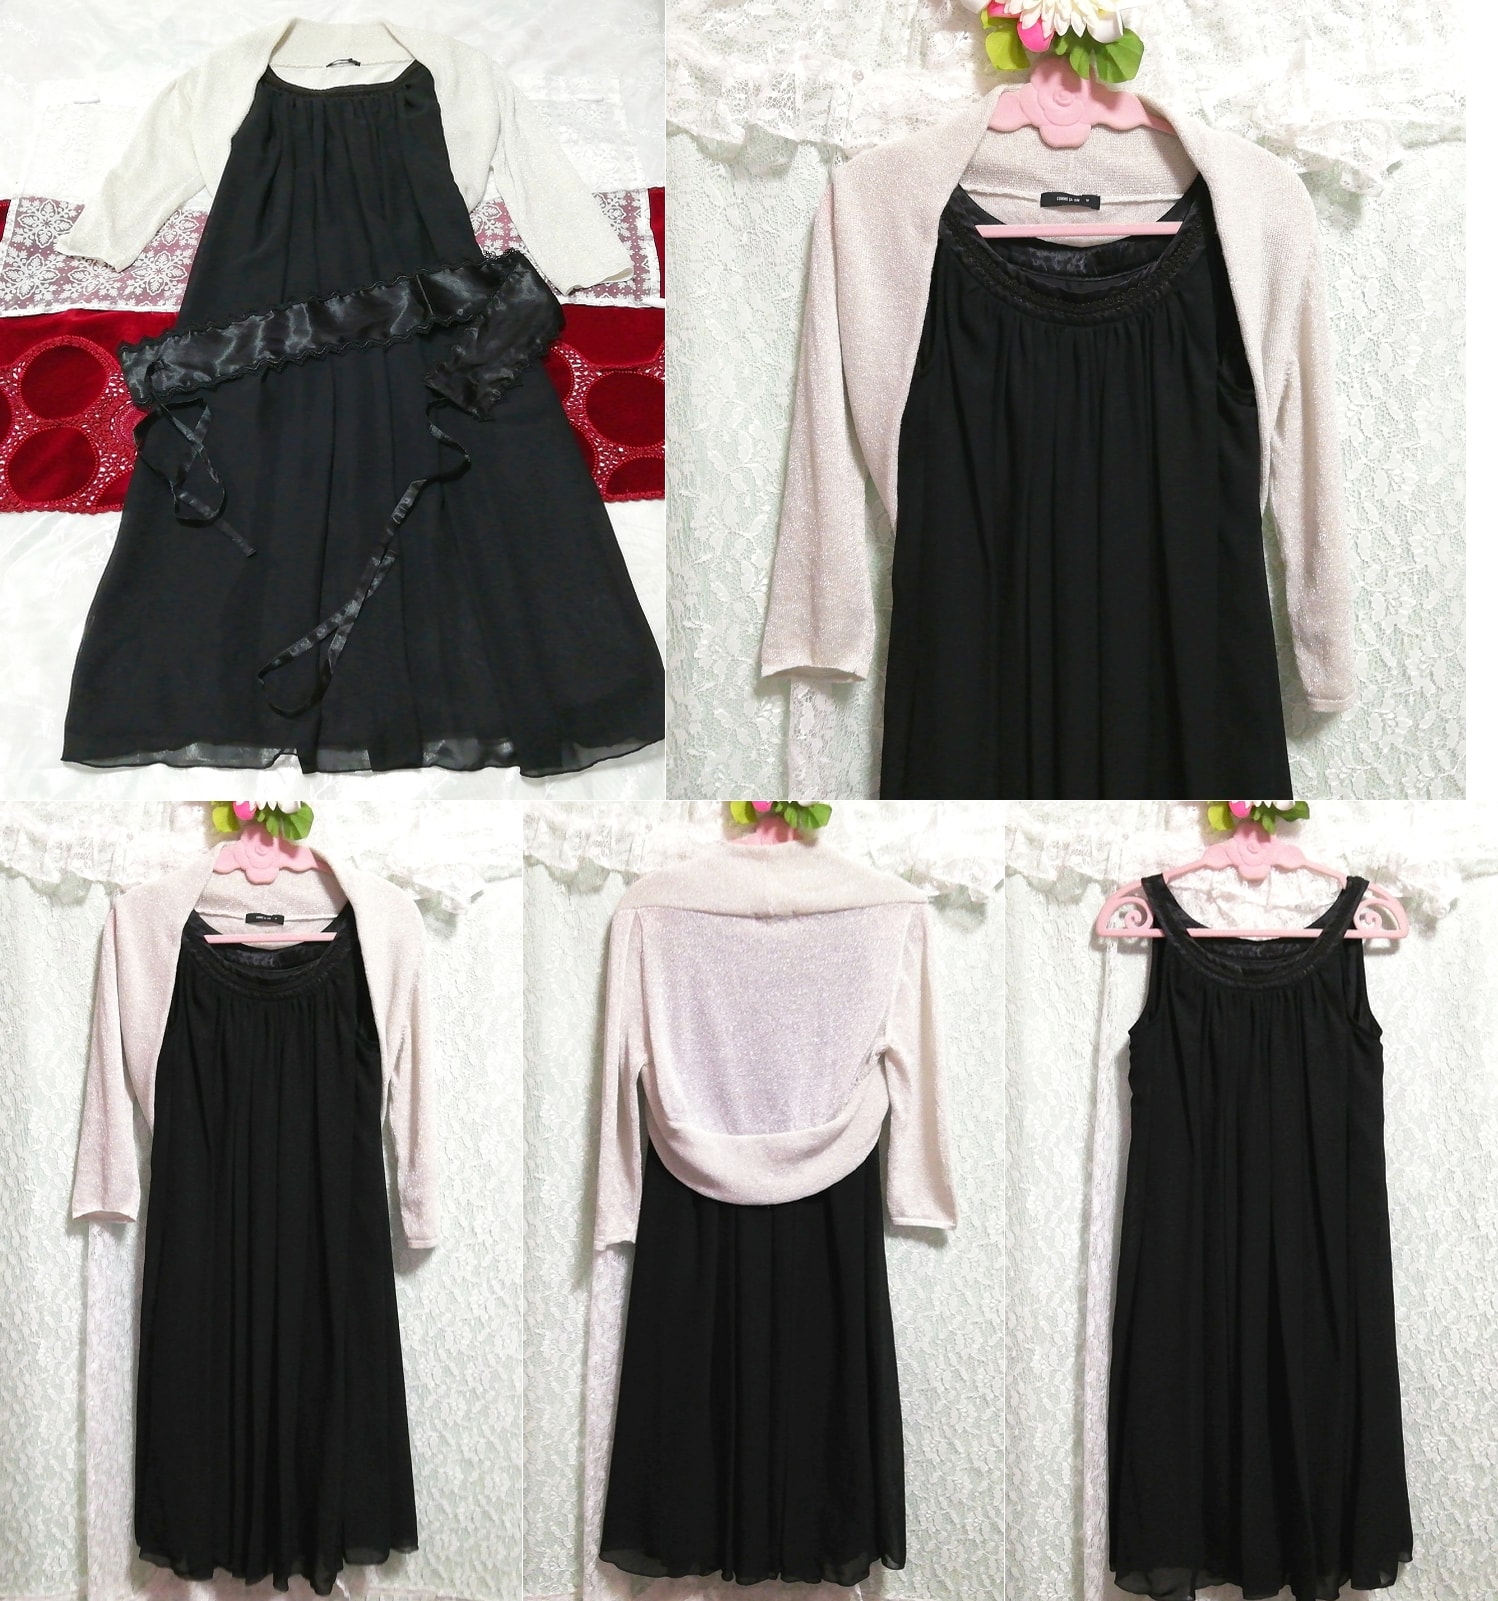 그레이 하오리 가운 네글리제 나이트가운 블랙 시폰 캐미솔 드레스 2P, 패션, 숙녀 패션, 잠옷, 잠옷